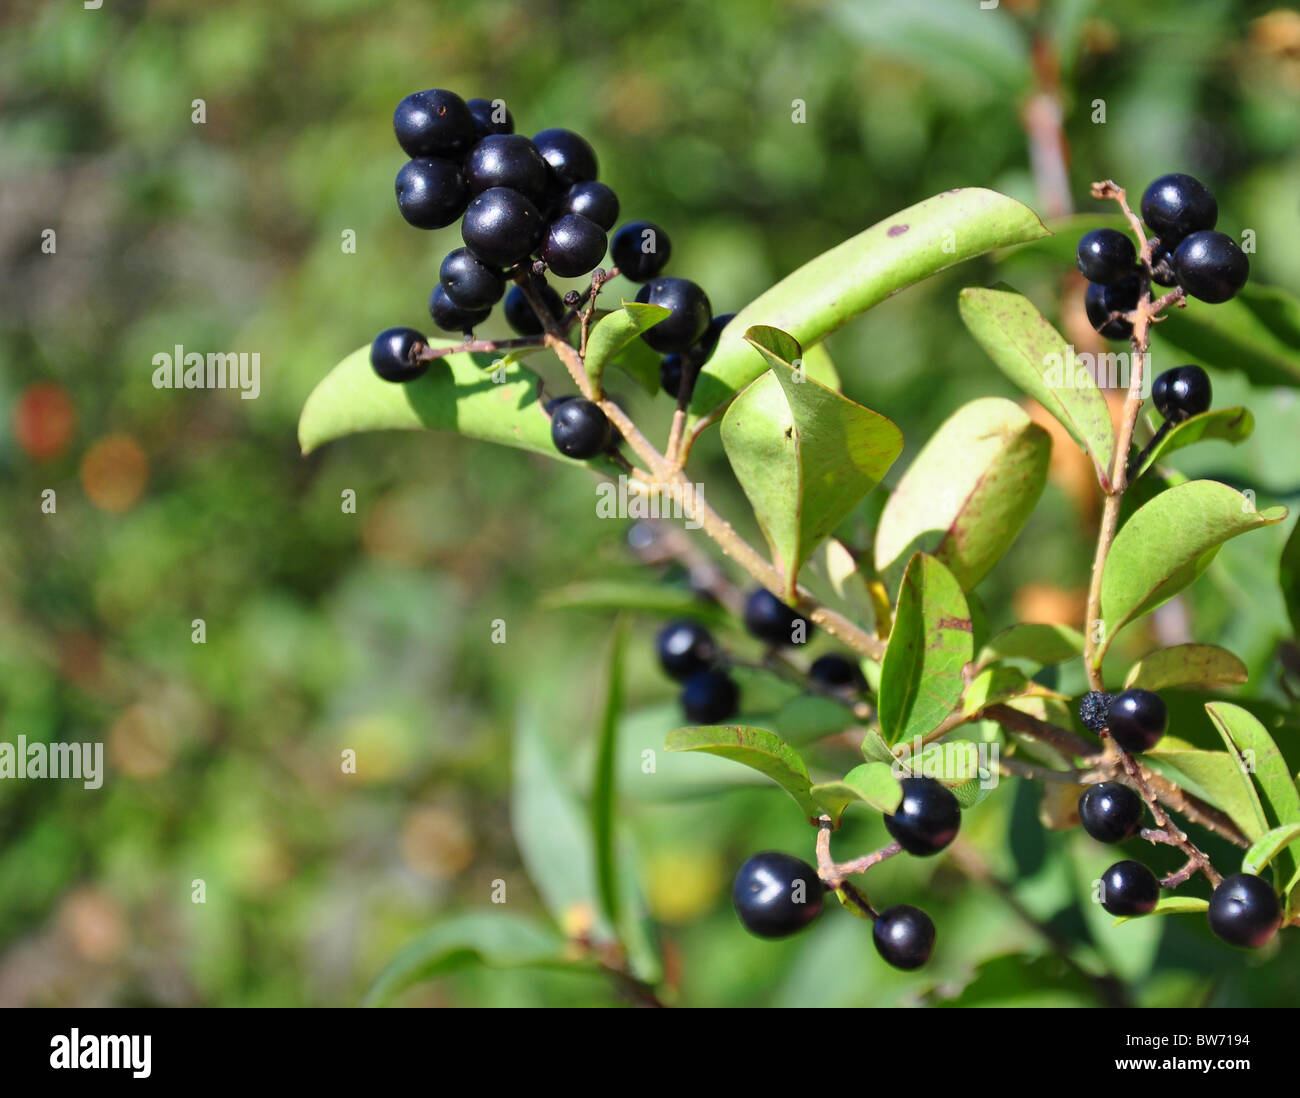 Berries of alder buckthorn (Frangula alnus) Stock Photo